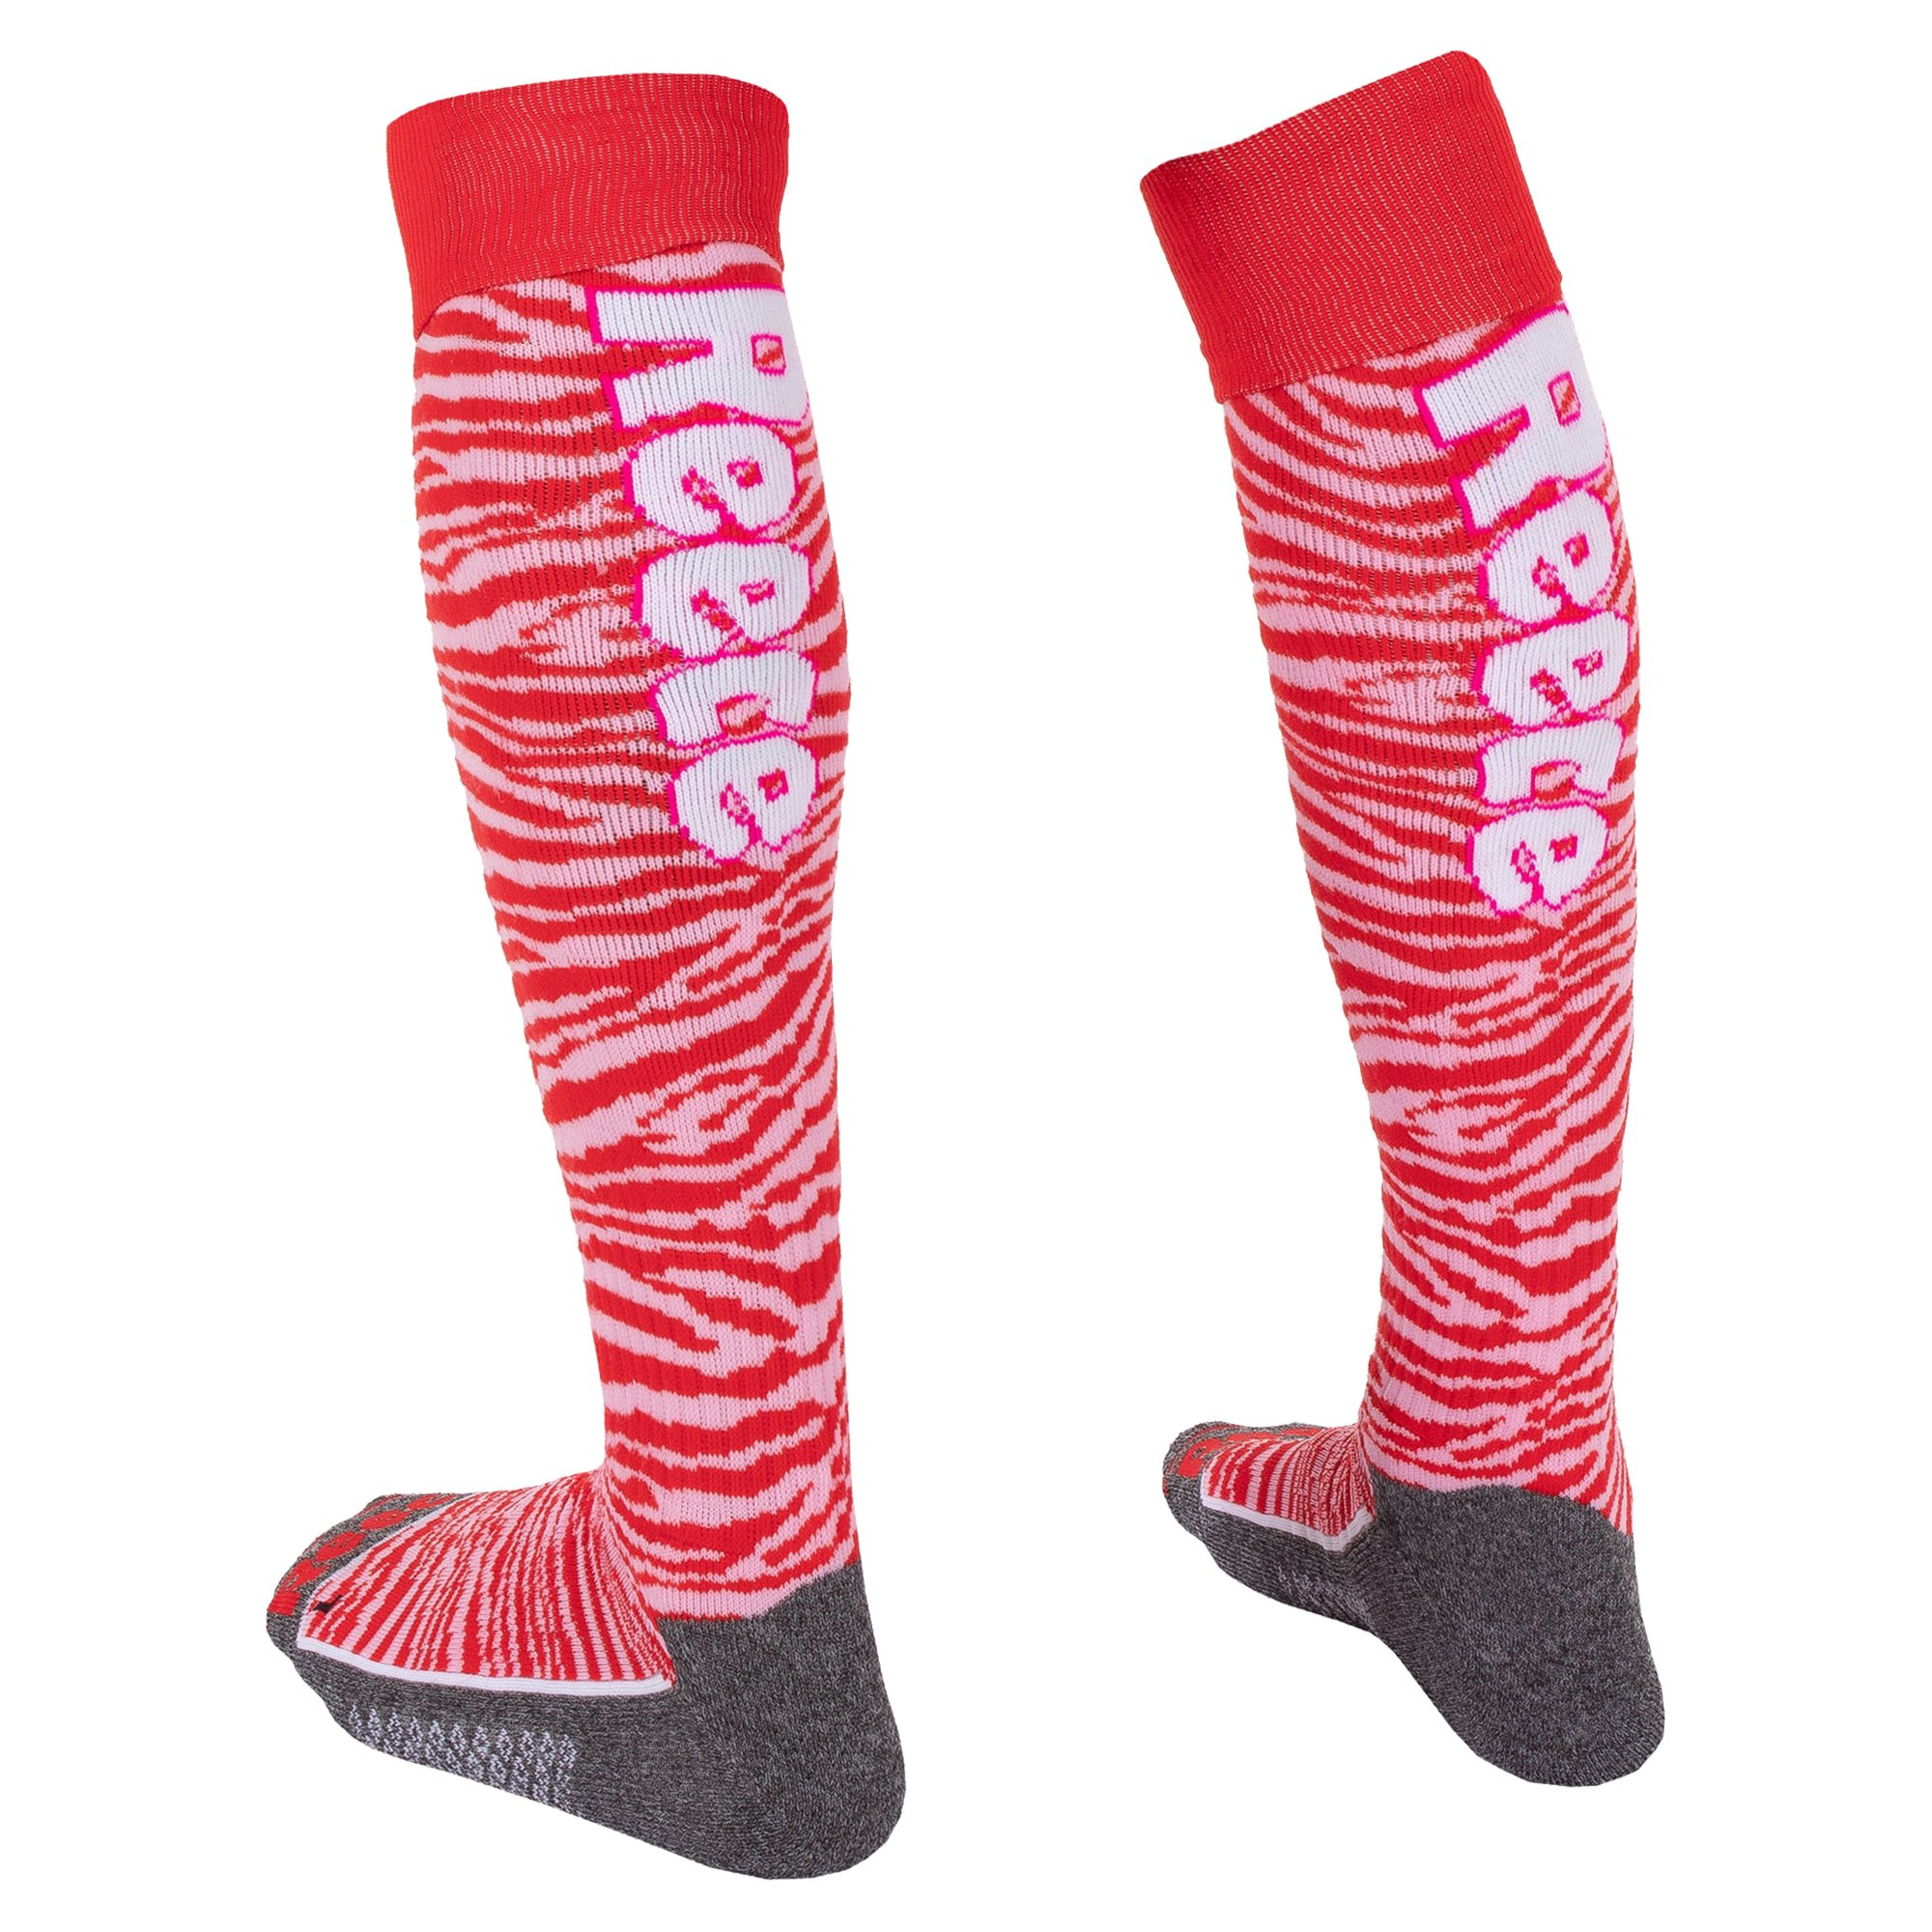 Reece Australia Amaroo Socks